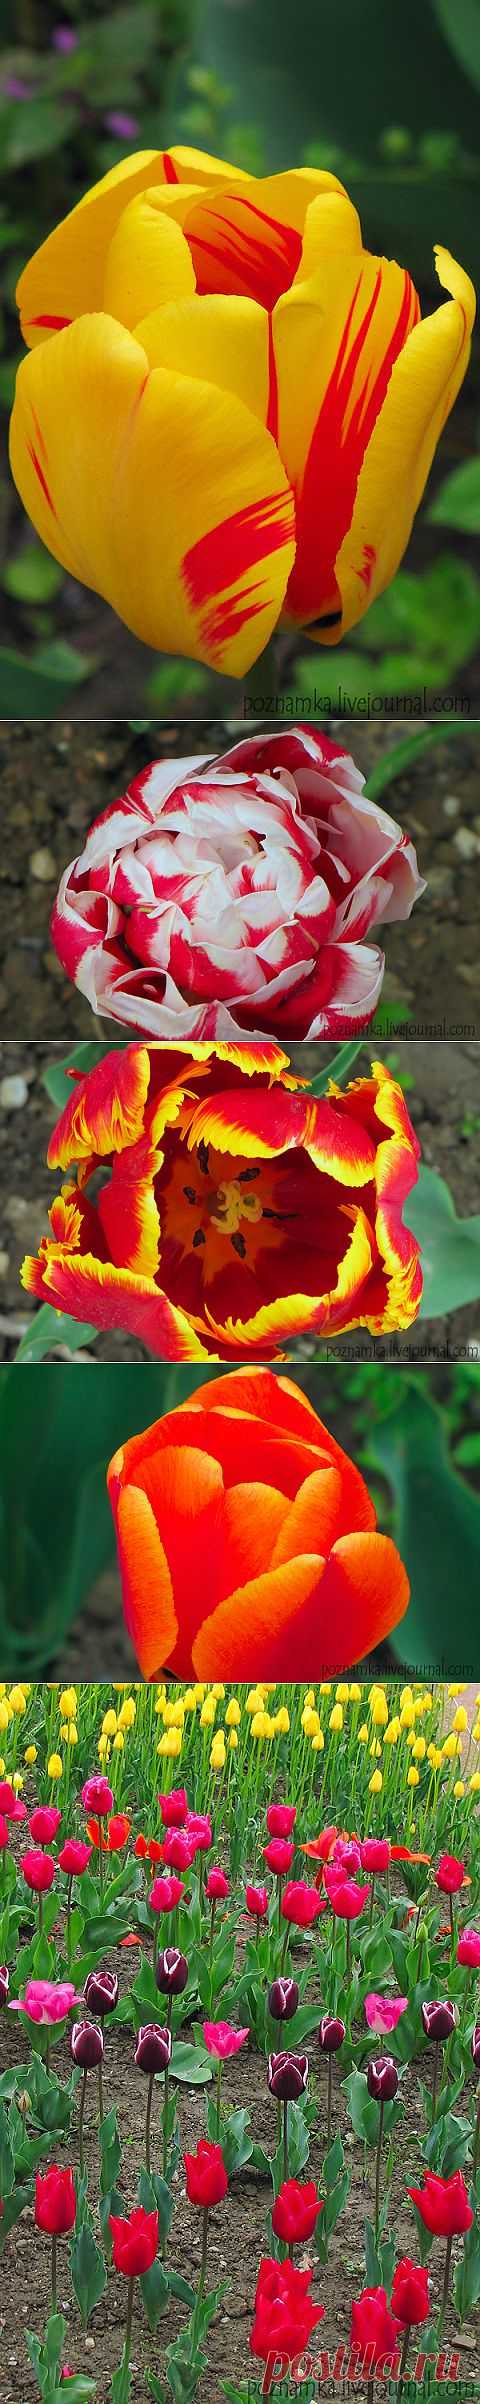 [Украина] Выставка тюльпанов в Никитинском ботаническом саду | Путешествуем вместе